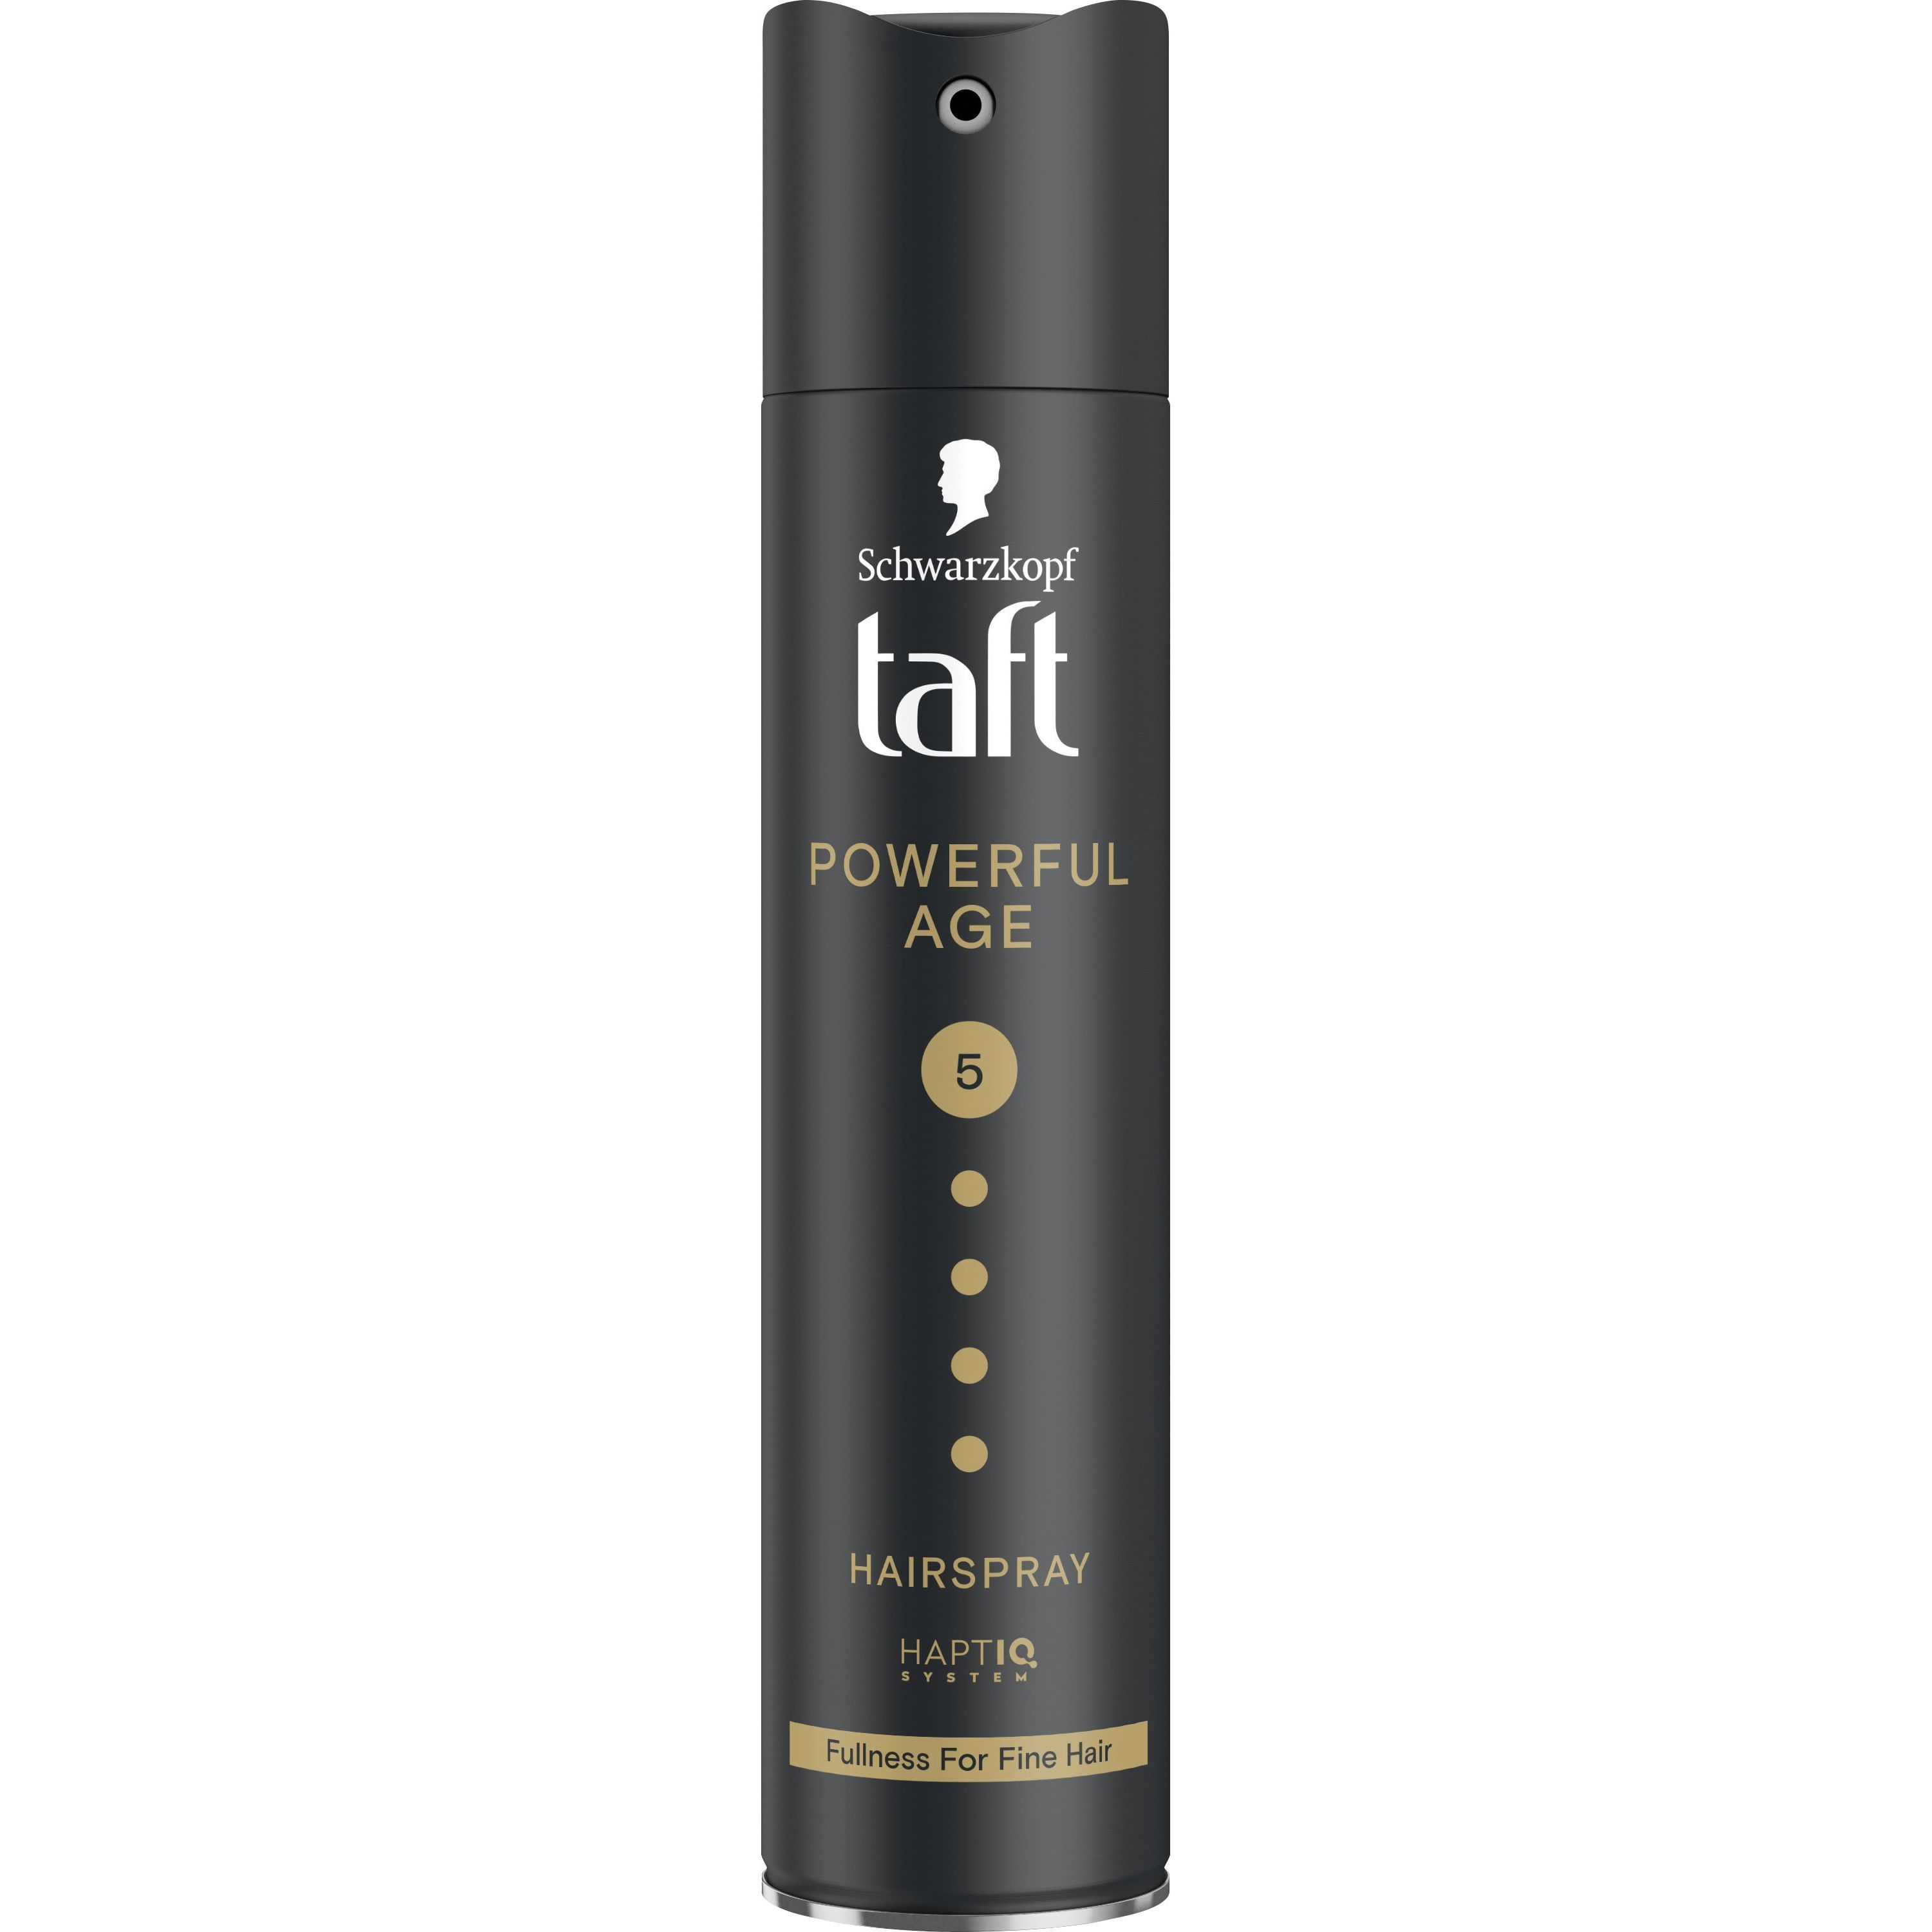 Лак Taft Powerful Age 5 для тонких и ослабленных волос 250 мл - фото 1